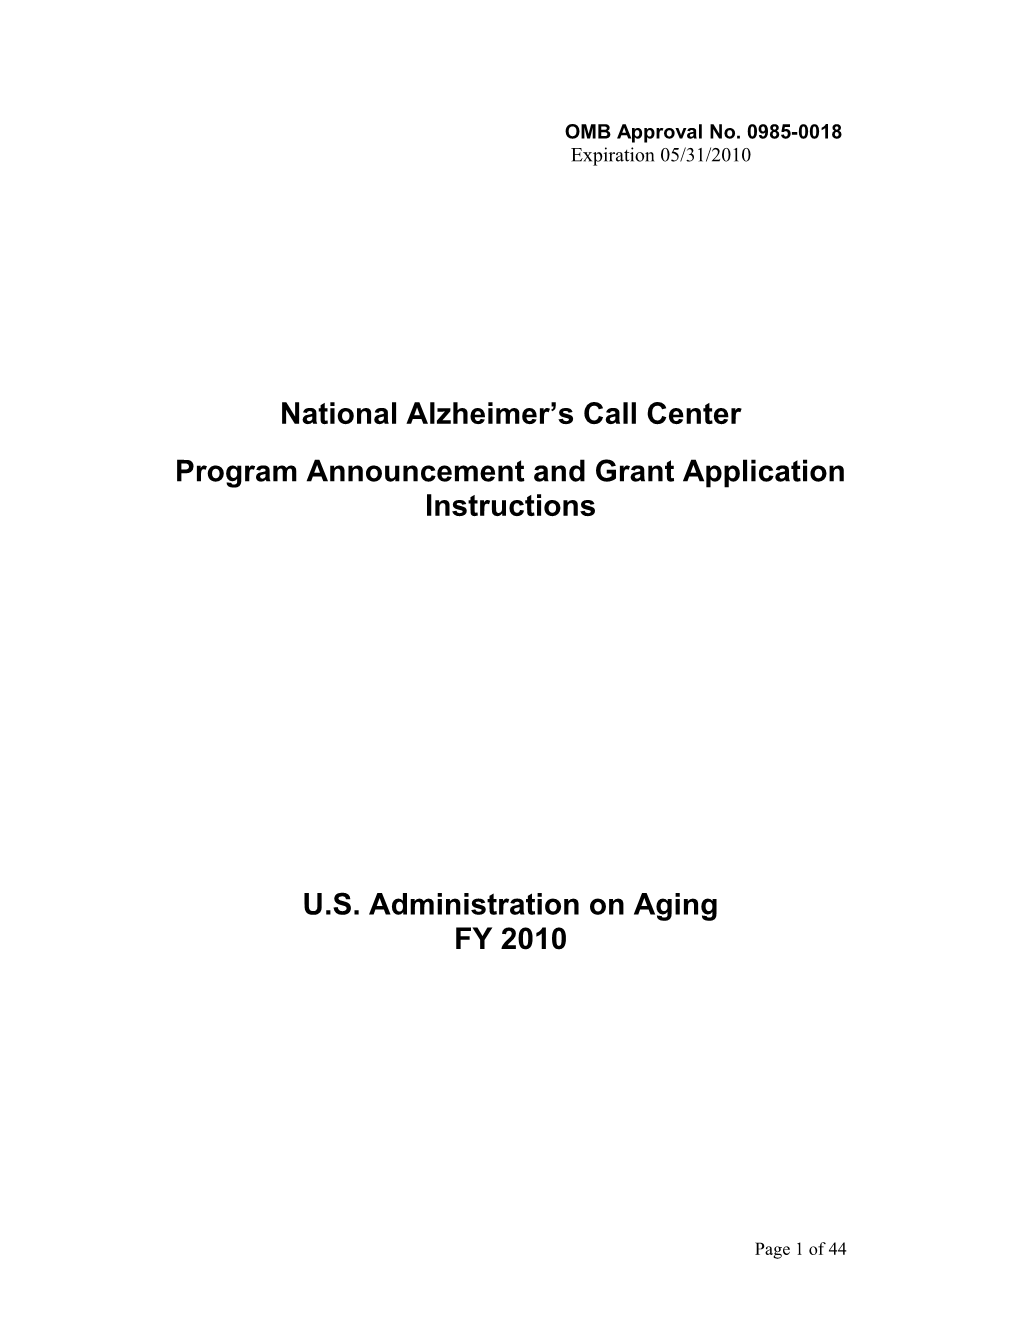 National Alzheimer's Call Center Program Announcement